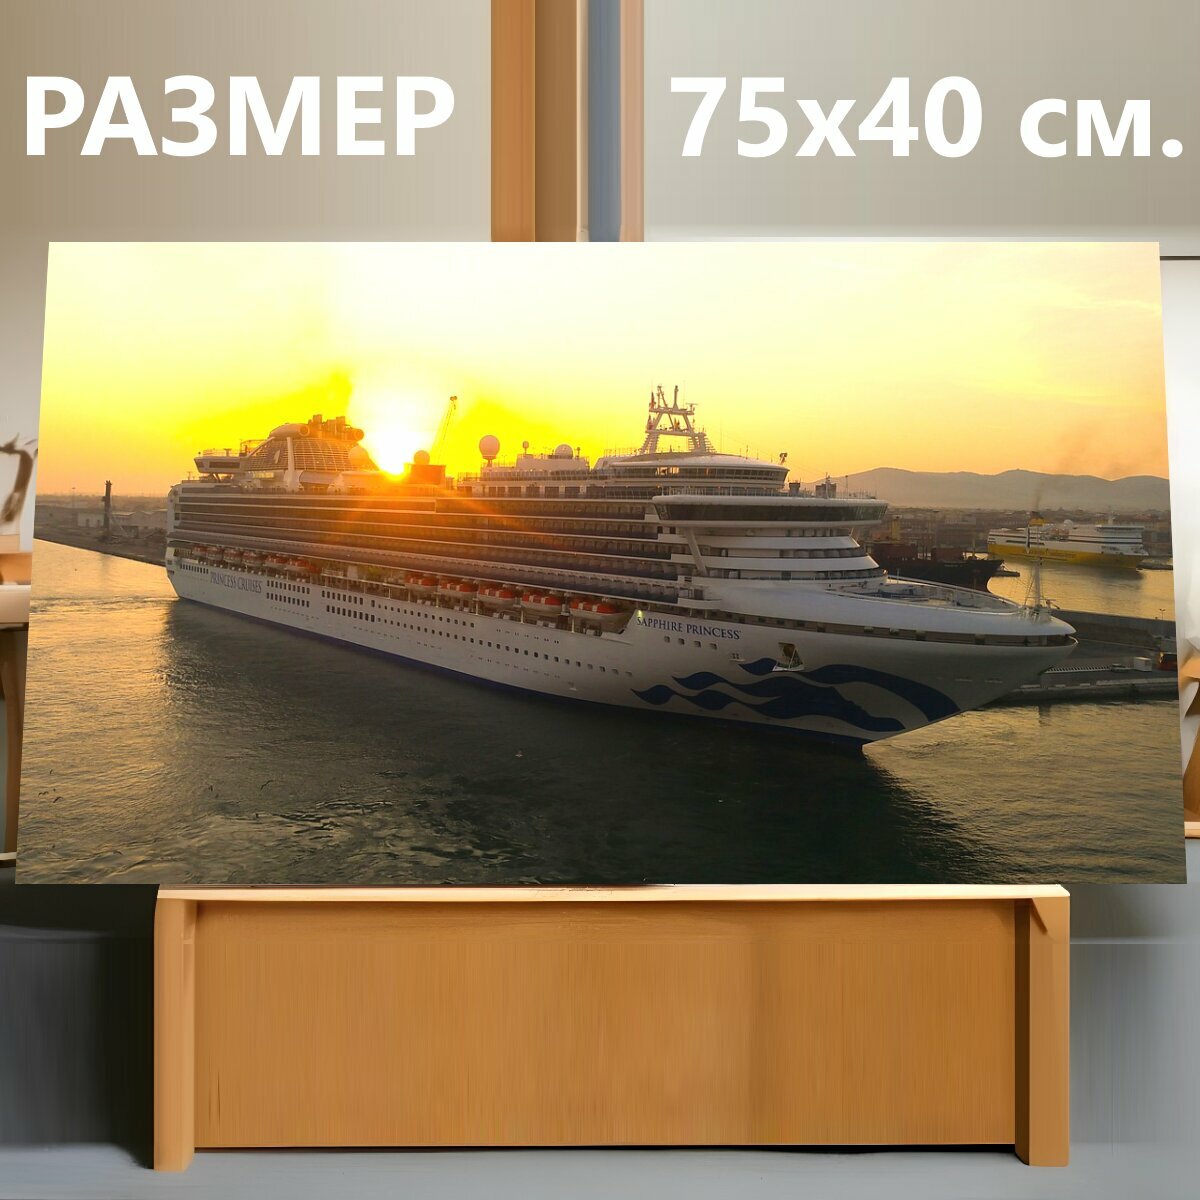 Картина на холсте "Круизное судно, судно, круиз" на подрамнике 75х40 см. для интерьера